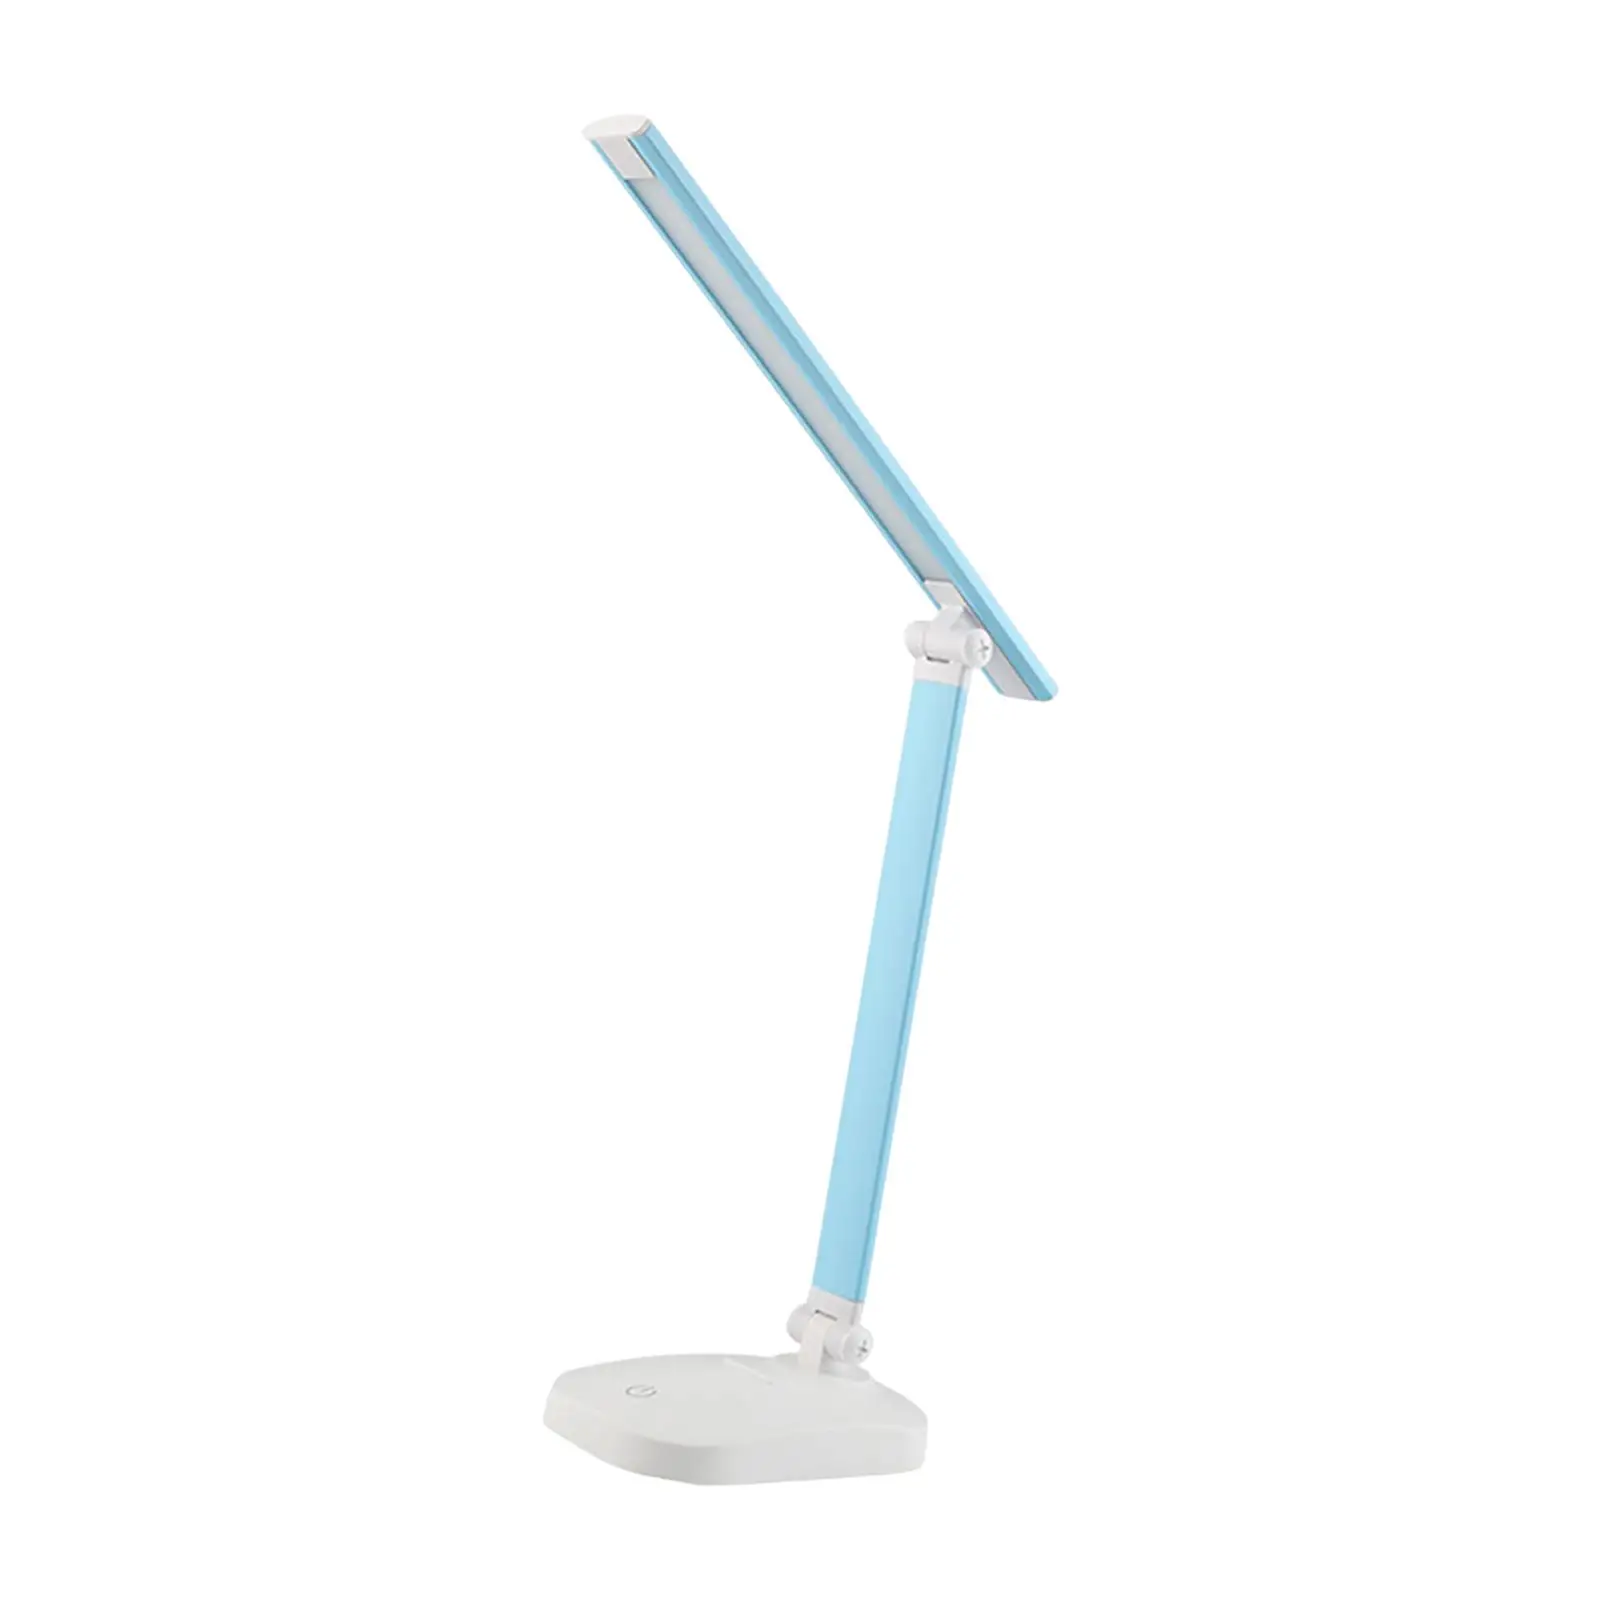 LED Desk Lamp USB with Adjustable Arm Desk Light for Bedside Study Bedroom